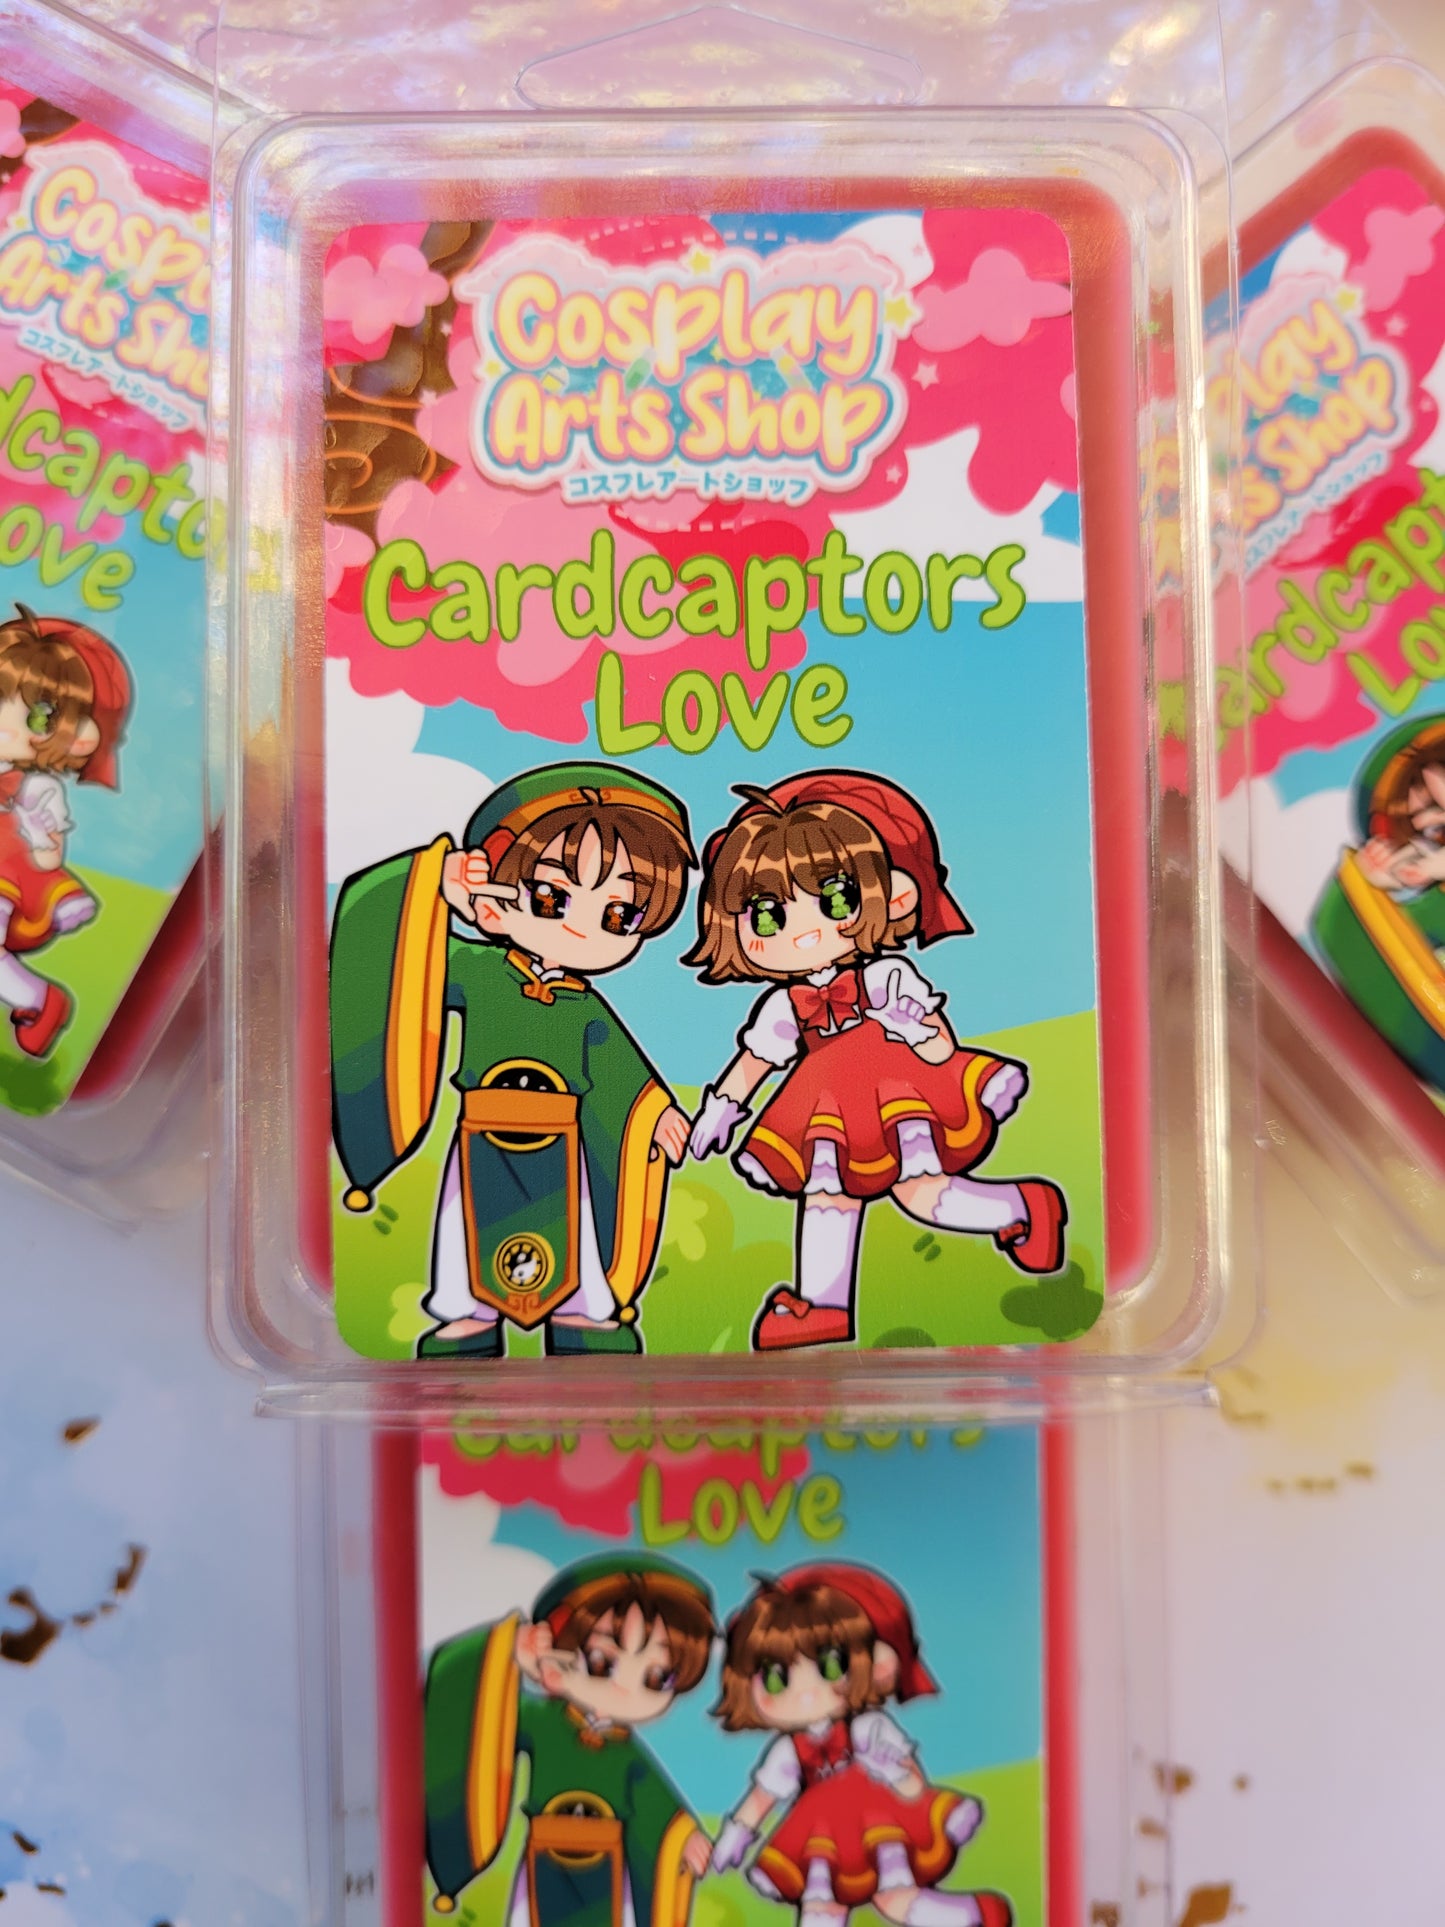 Cardcaptors Love Wax Melt - Cosplay Arts Shop